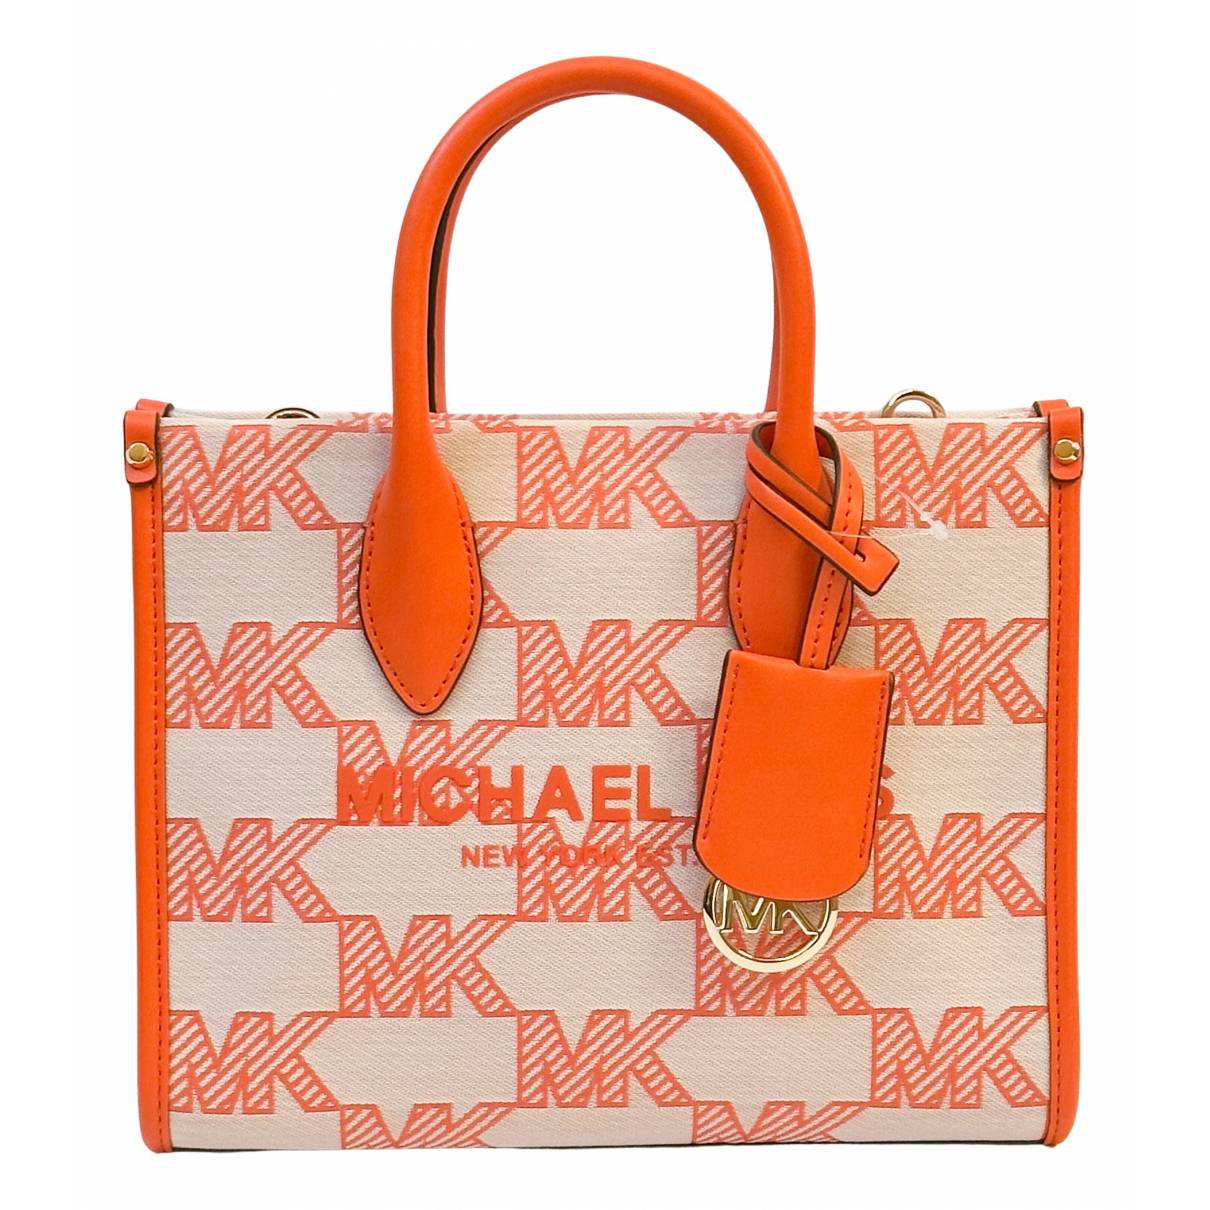 Michael Kors Tote Bag in Orange